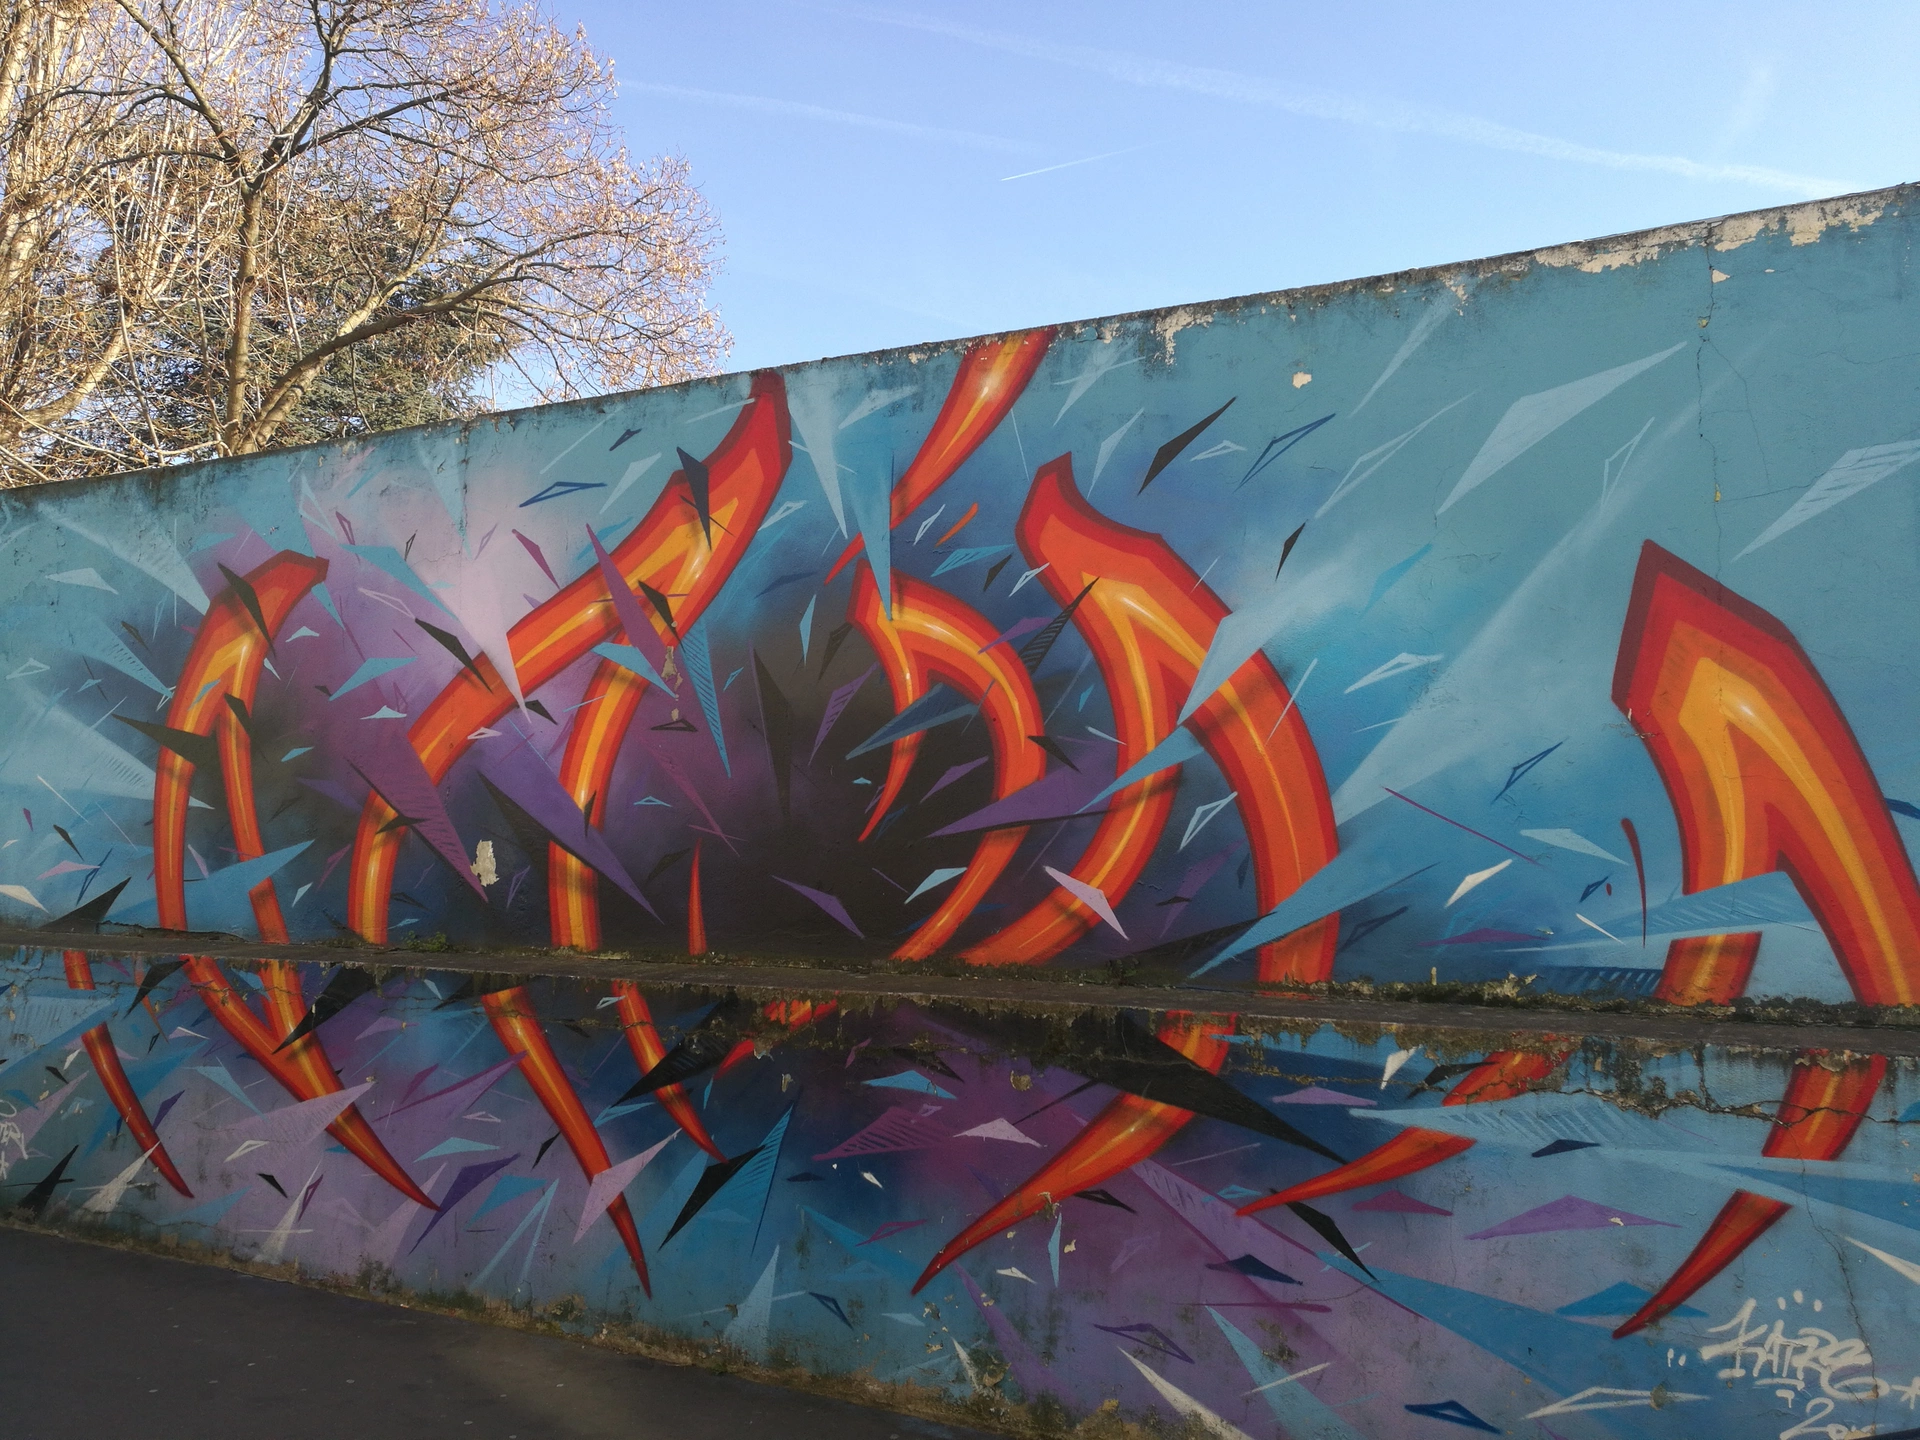 Oeuvre de Street Art réalisée par Katre à Paris